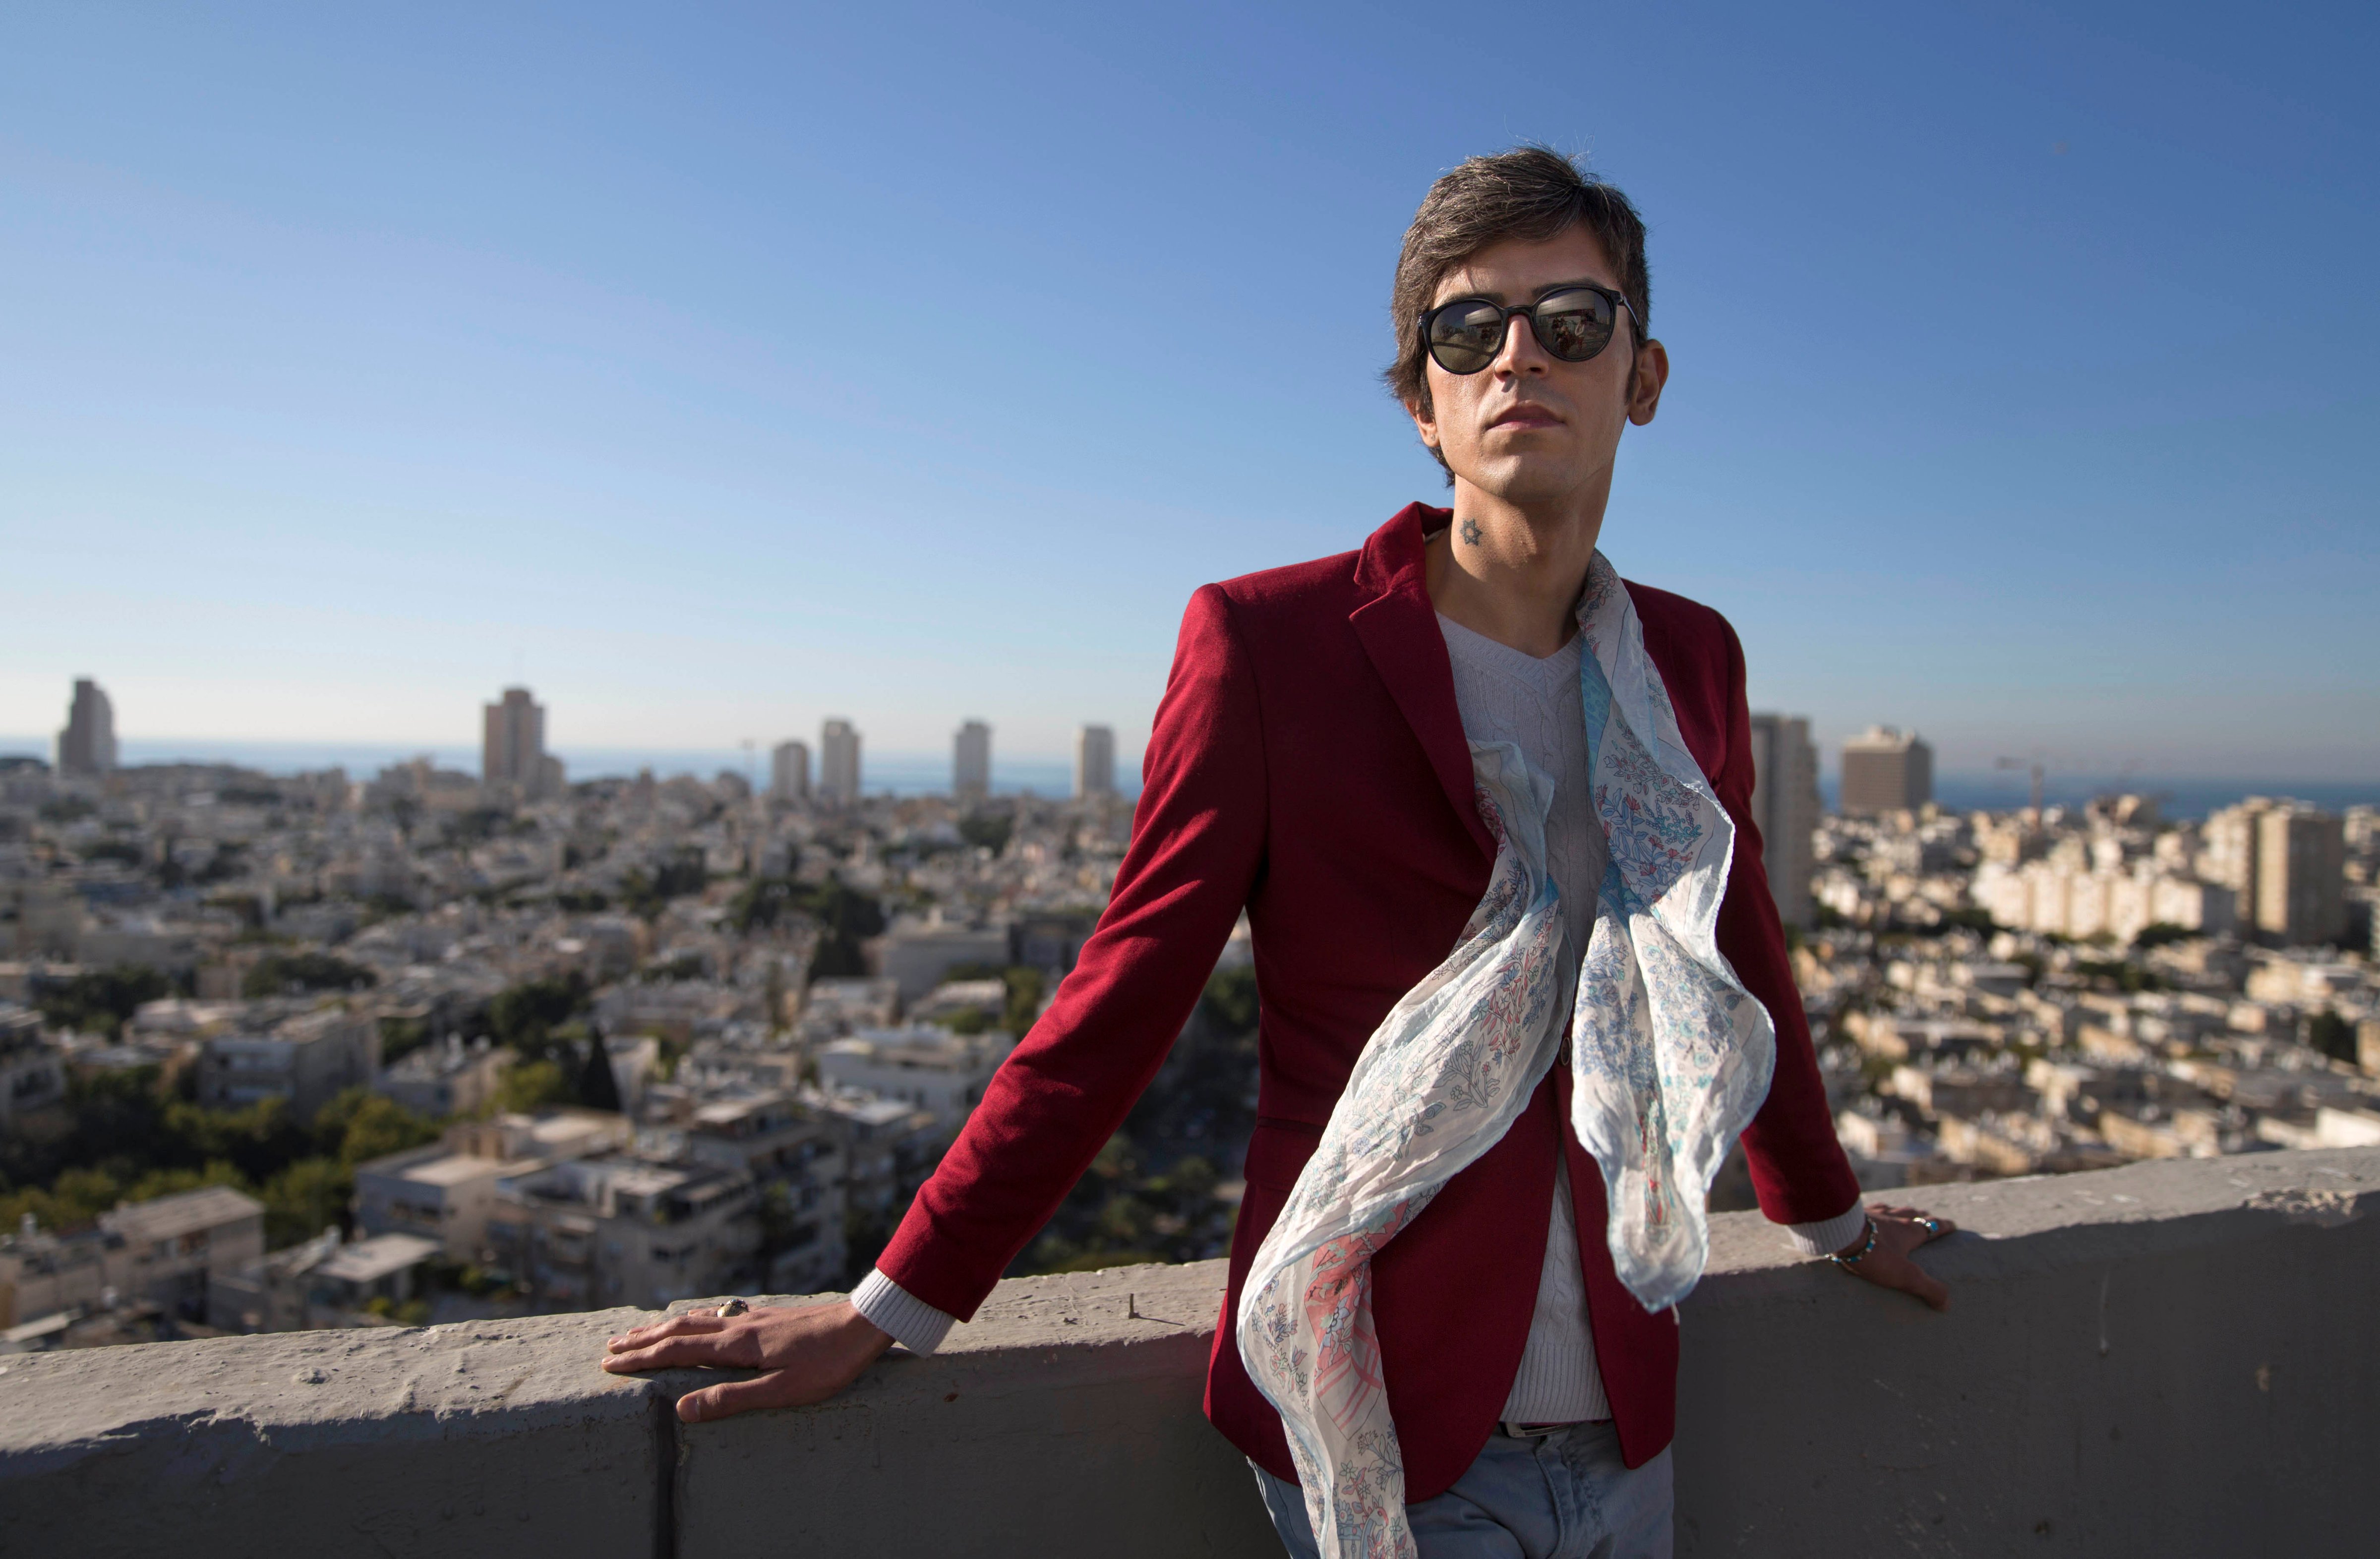 Iranian poet, Payam Feili poses for a photograph in Tel Aviv, Israel on Dec. 9, 2015. (Dan Balilty—AP)